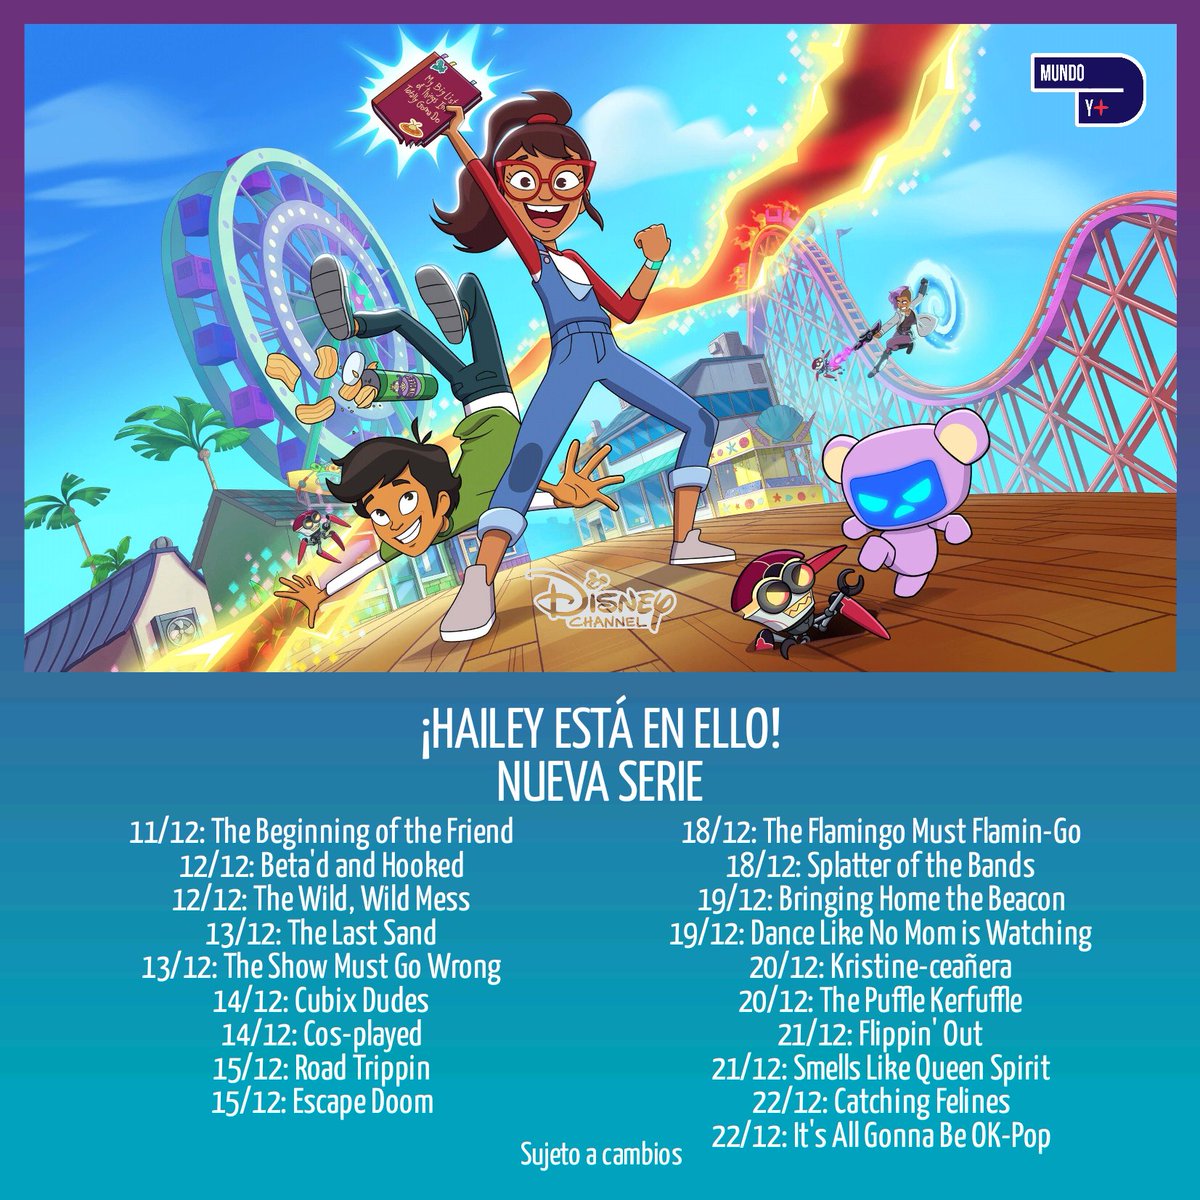 📕 ¡#HaileyEstáEnEllo!
✨ Nueva serie
🗓️ 11 al 22 de diciembre
📺 Disney Channel LA
🇵🇪 3:30pm
🇦🇷🇨🇱🇲🇽🇨🇴🇧🇷 5:30pm
🇻🇪 6:30pm